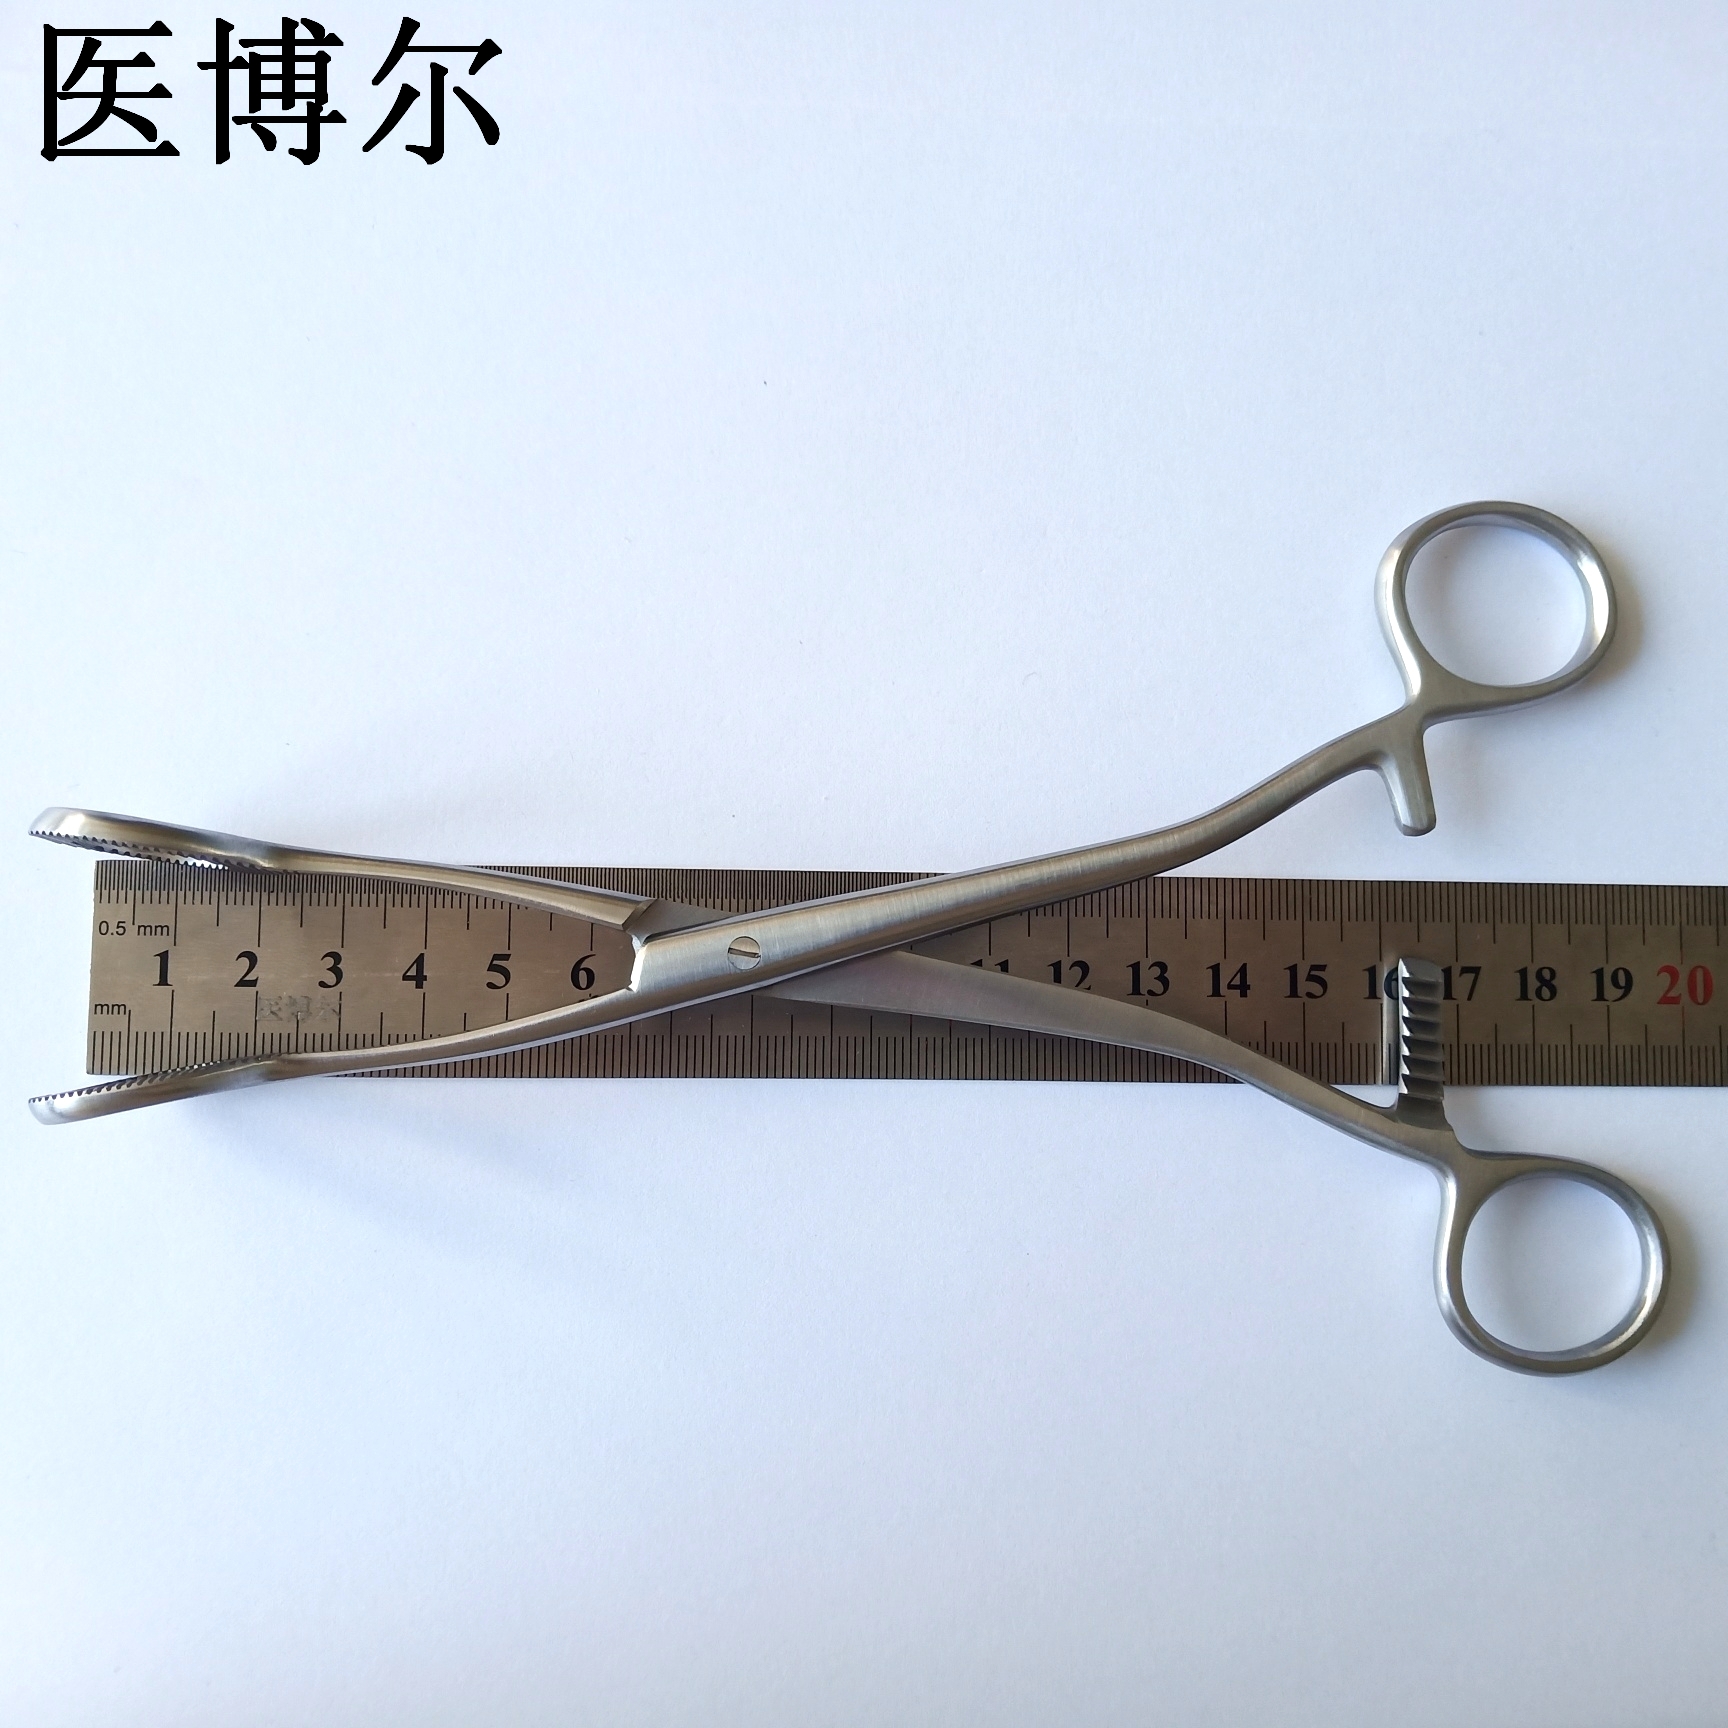 20cm舌钳 (2)_看图王.jpg